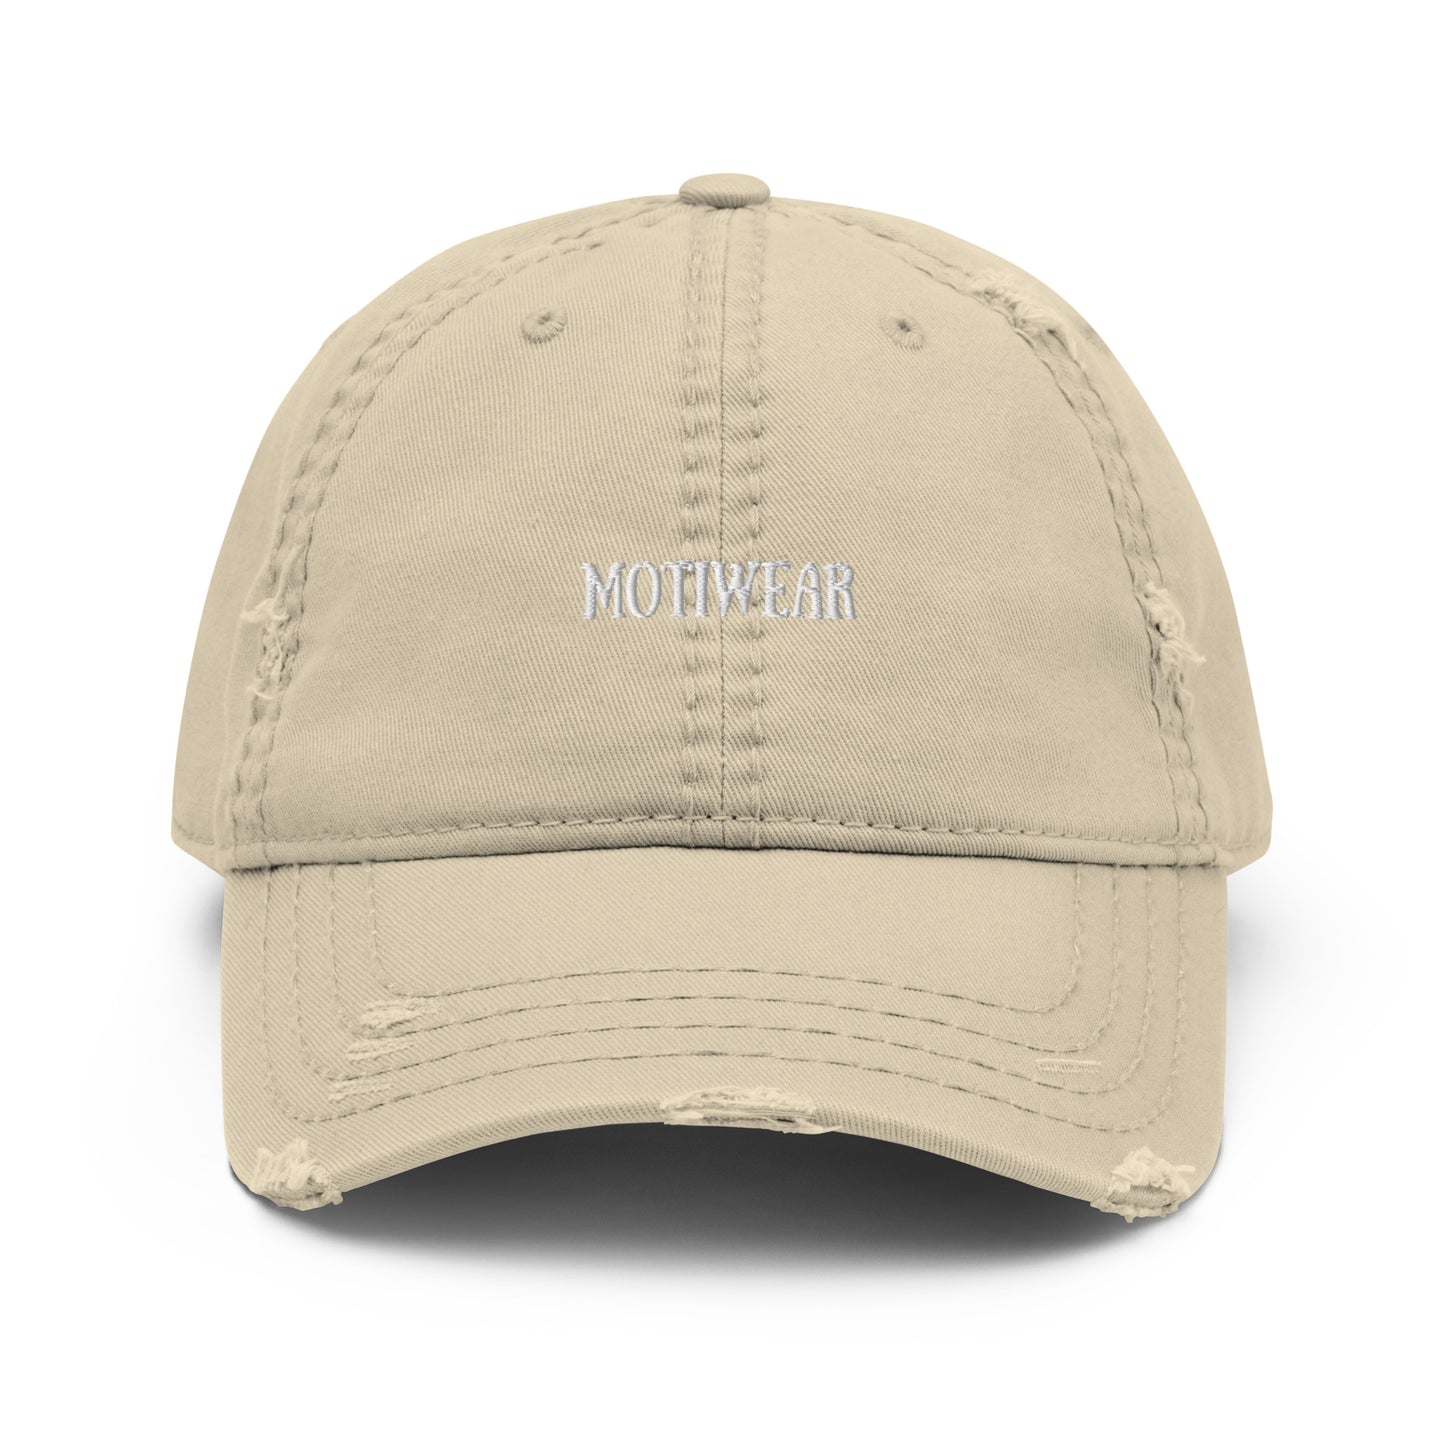 ‘Motiwear’ Hat